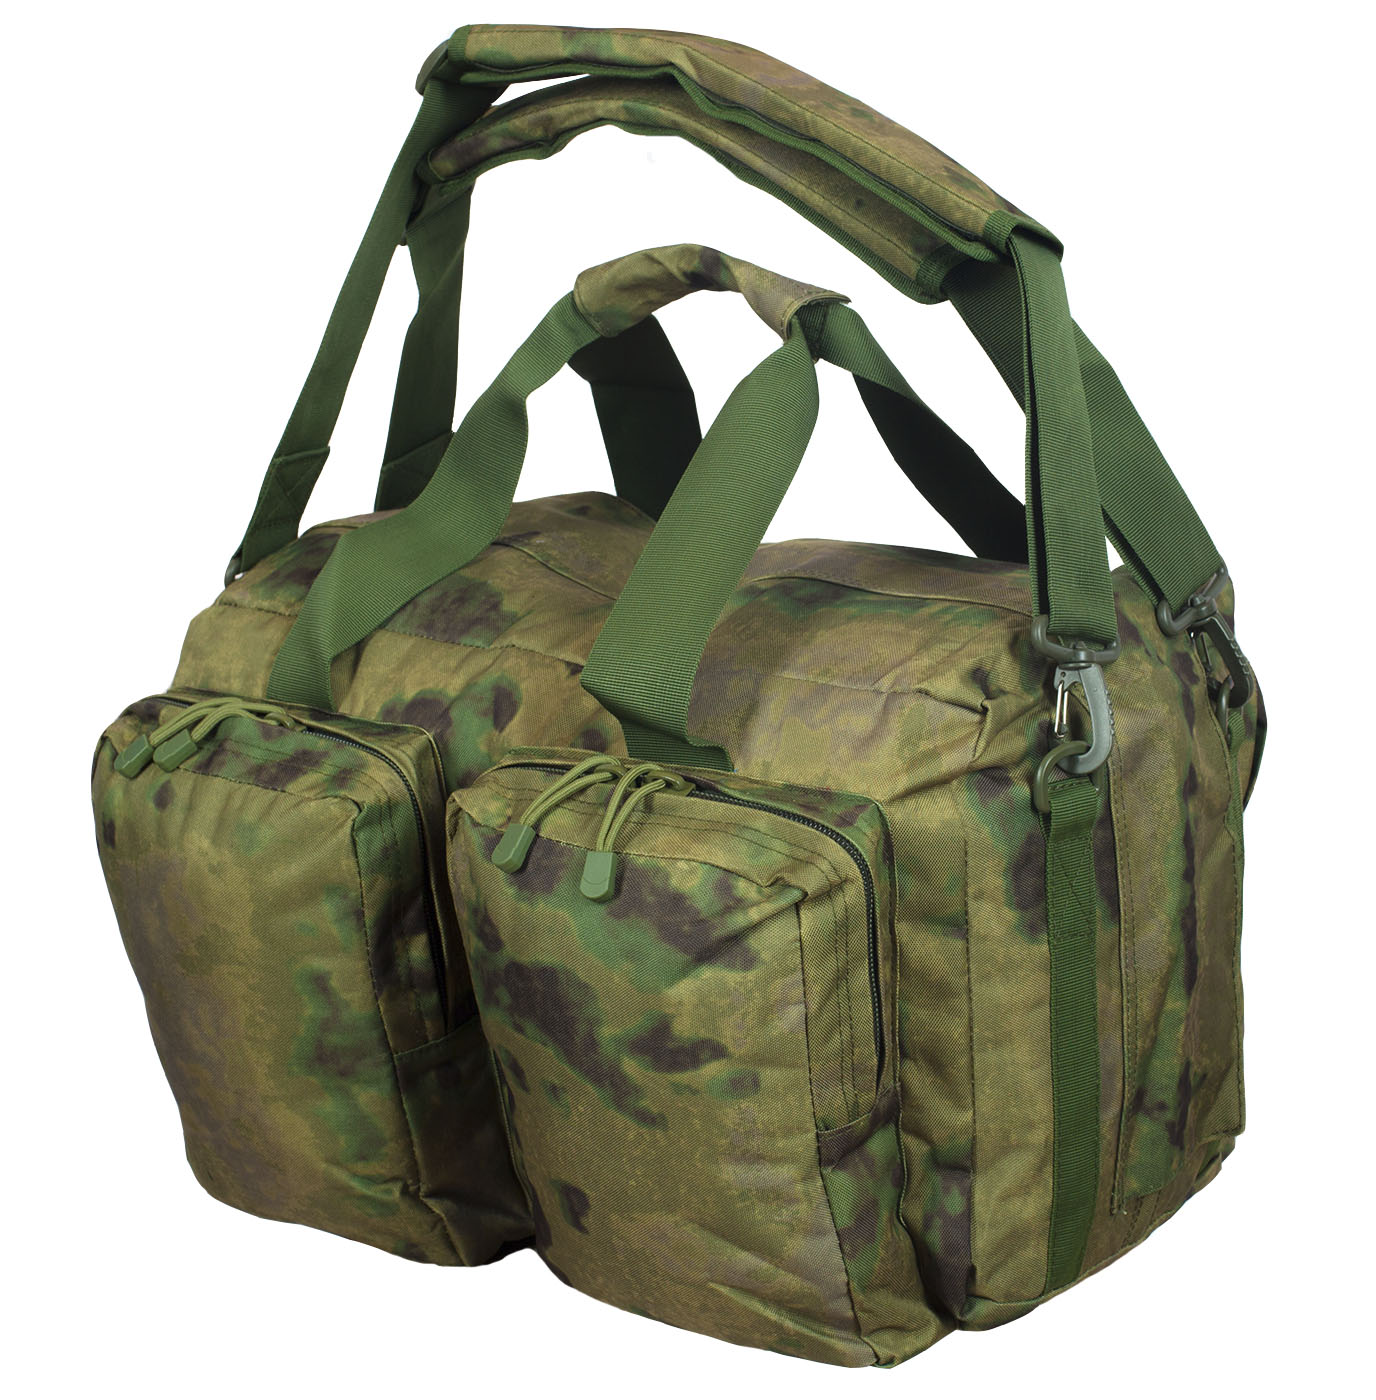 Заплечная камуфляжная сумка-баул ВМФ 